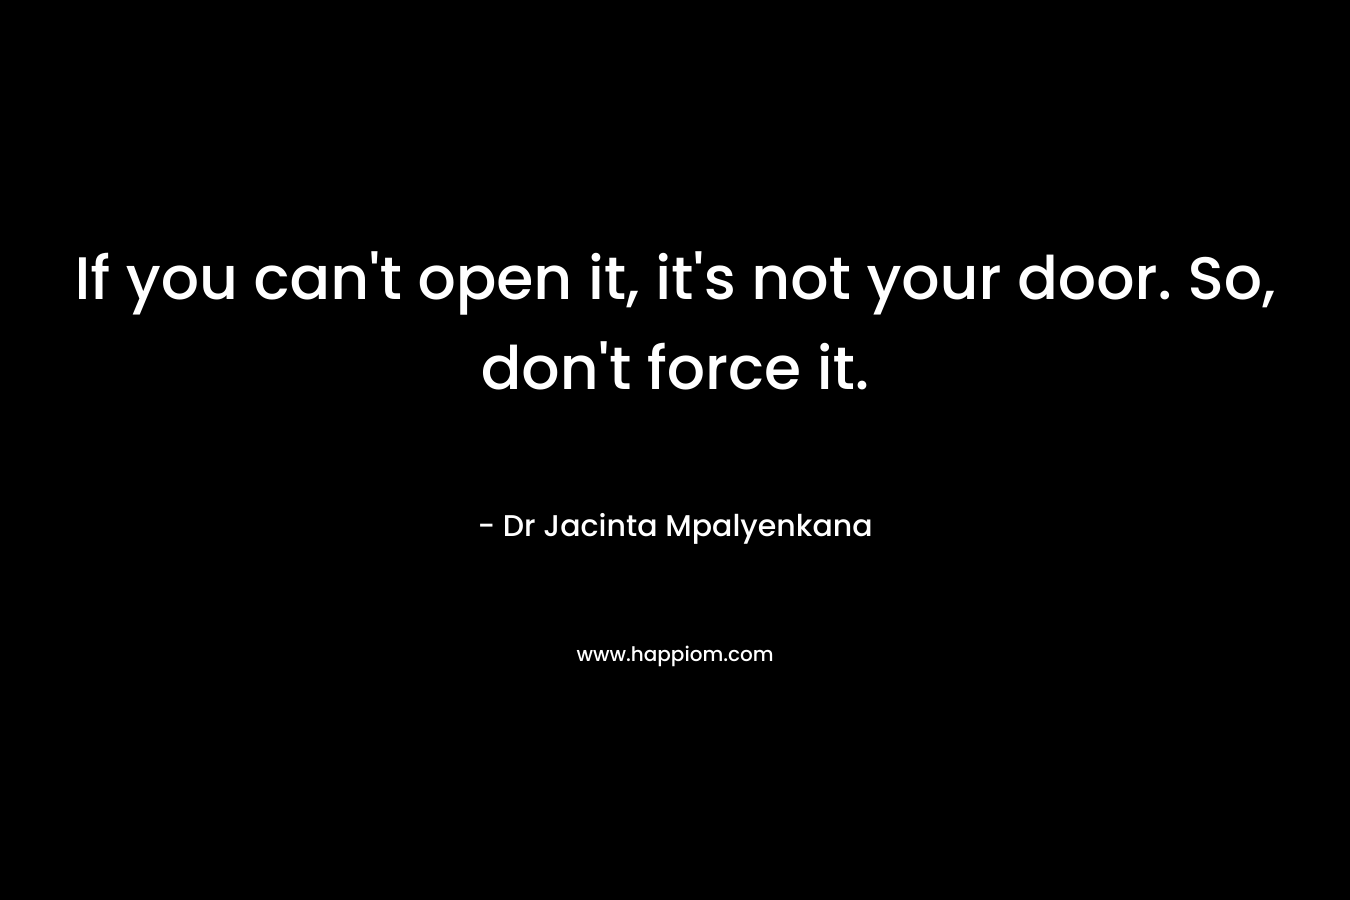 If you can't open it, it's not your door. So, don't force it.